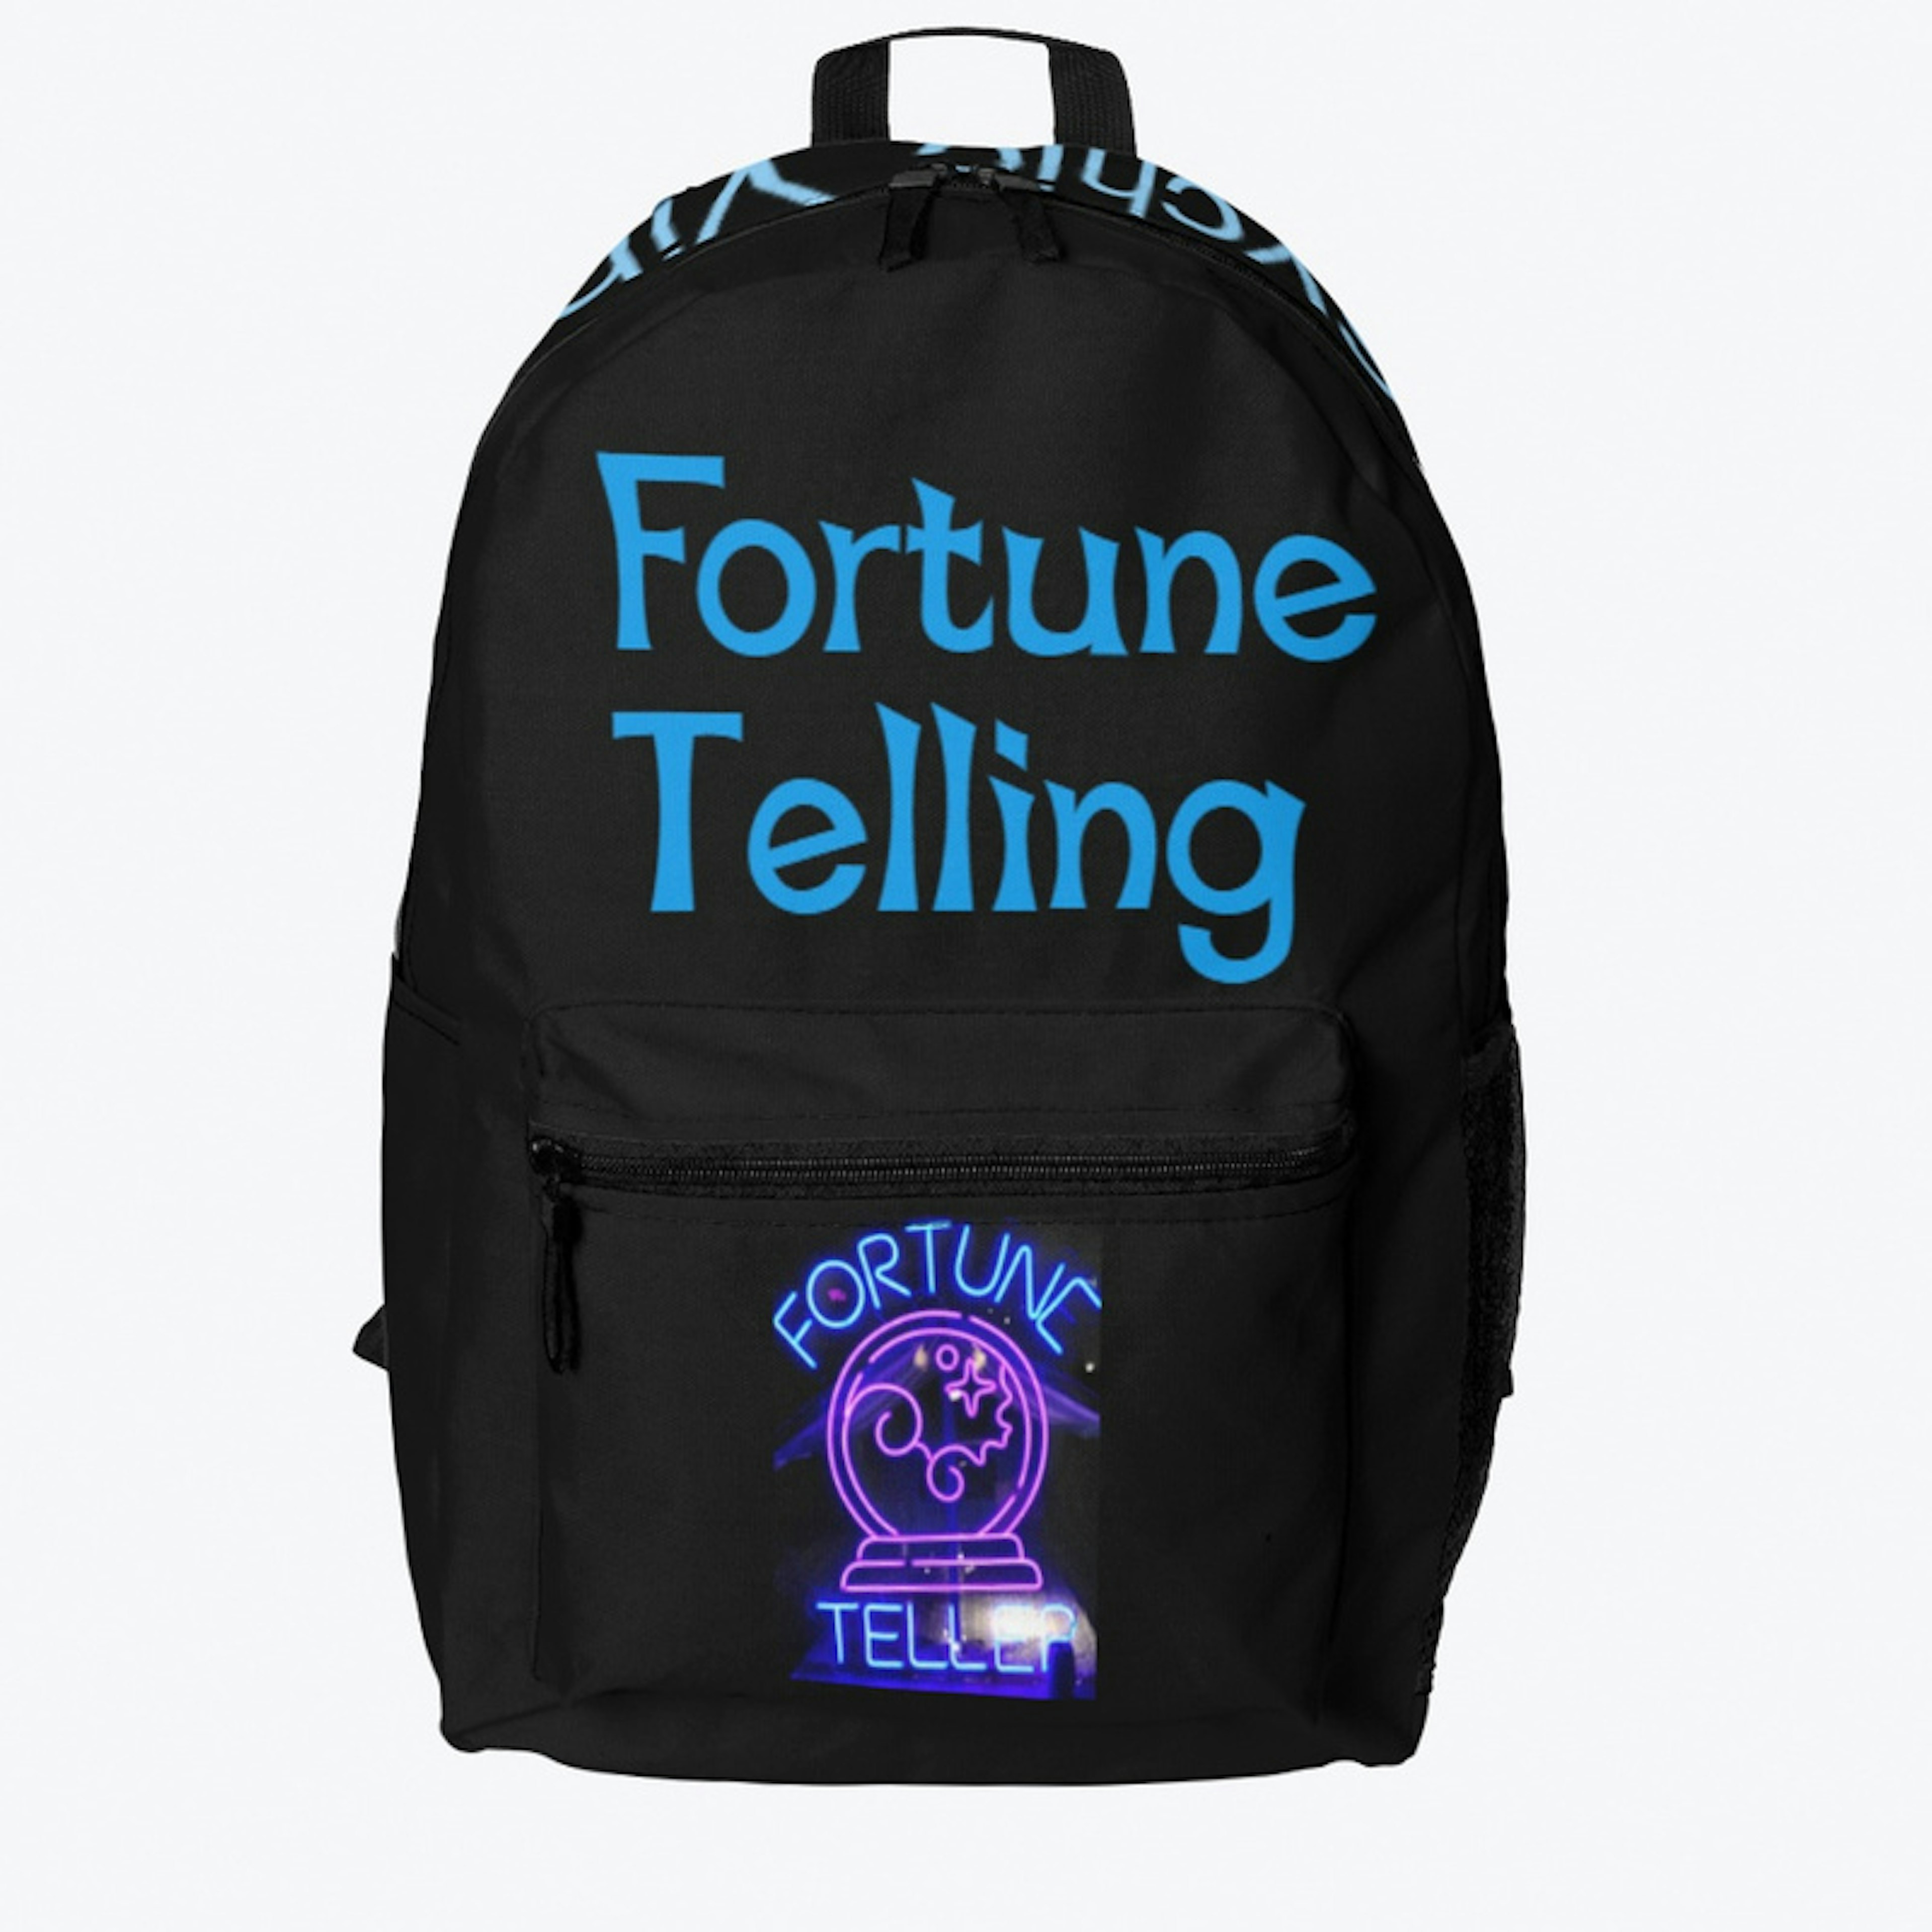 Unique fortune telling bag